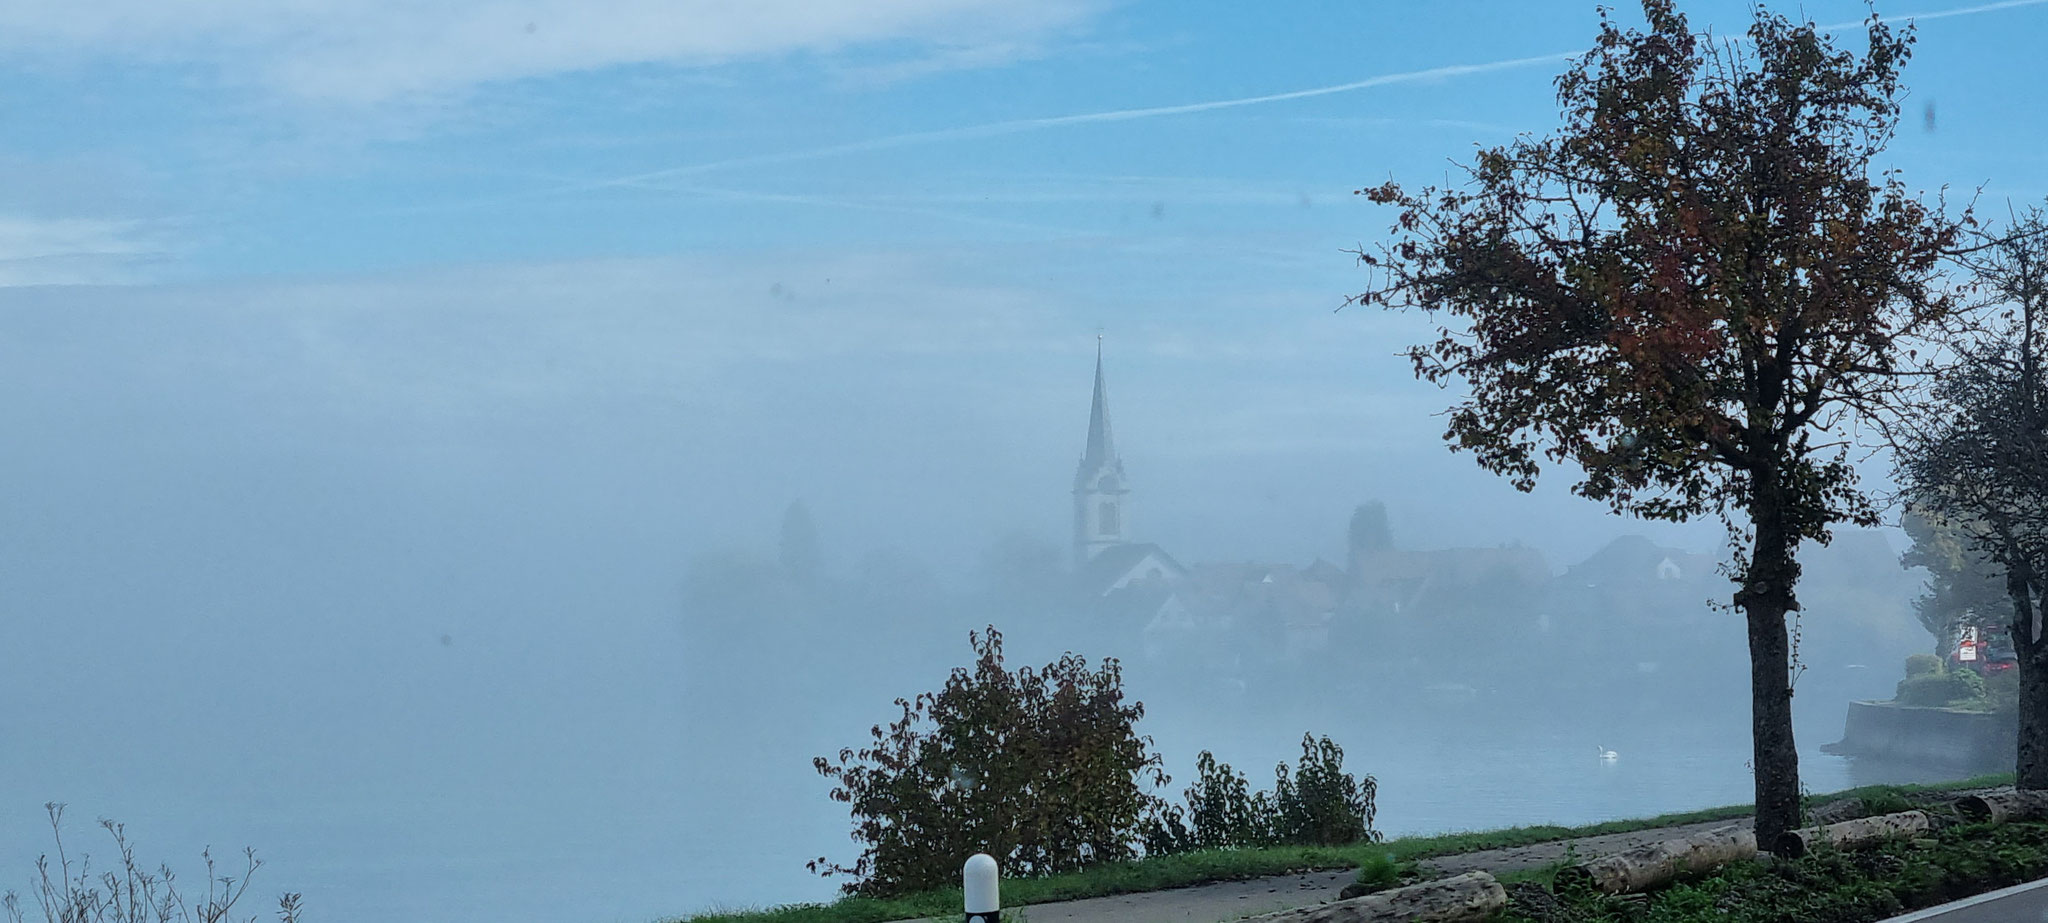 Na - welcher Kirchturm liegt da im Nebel?